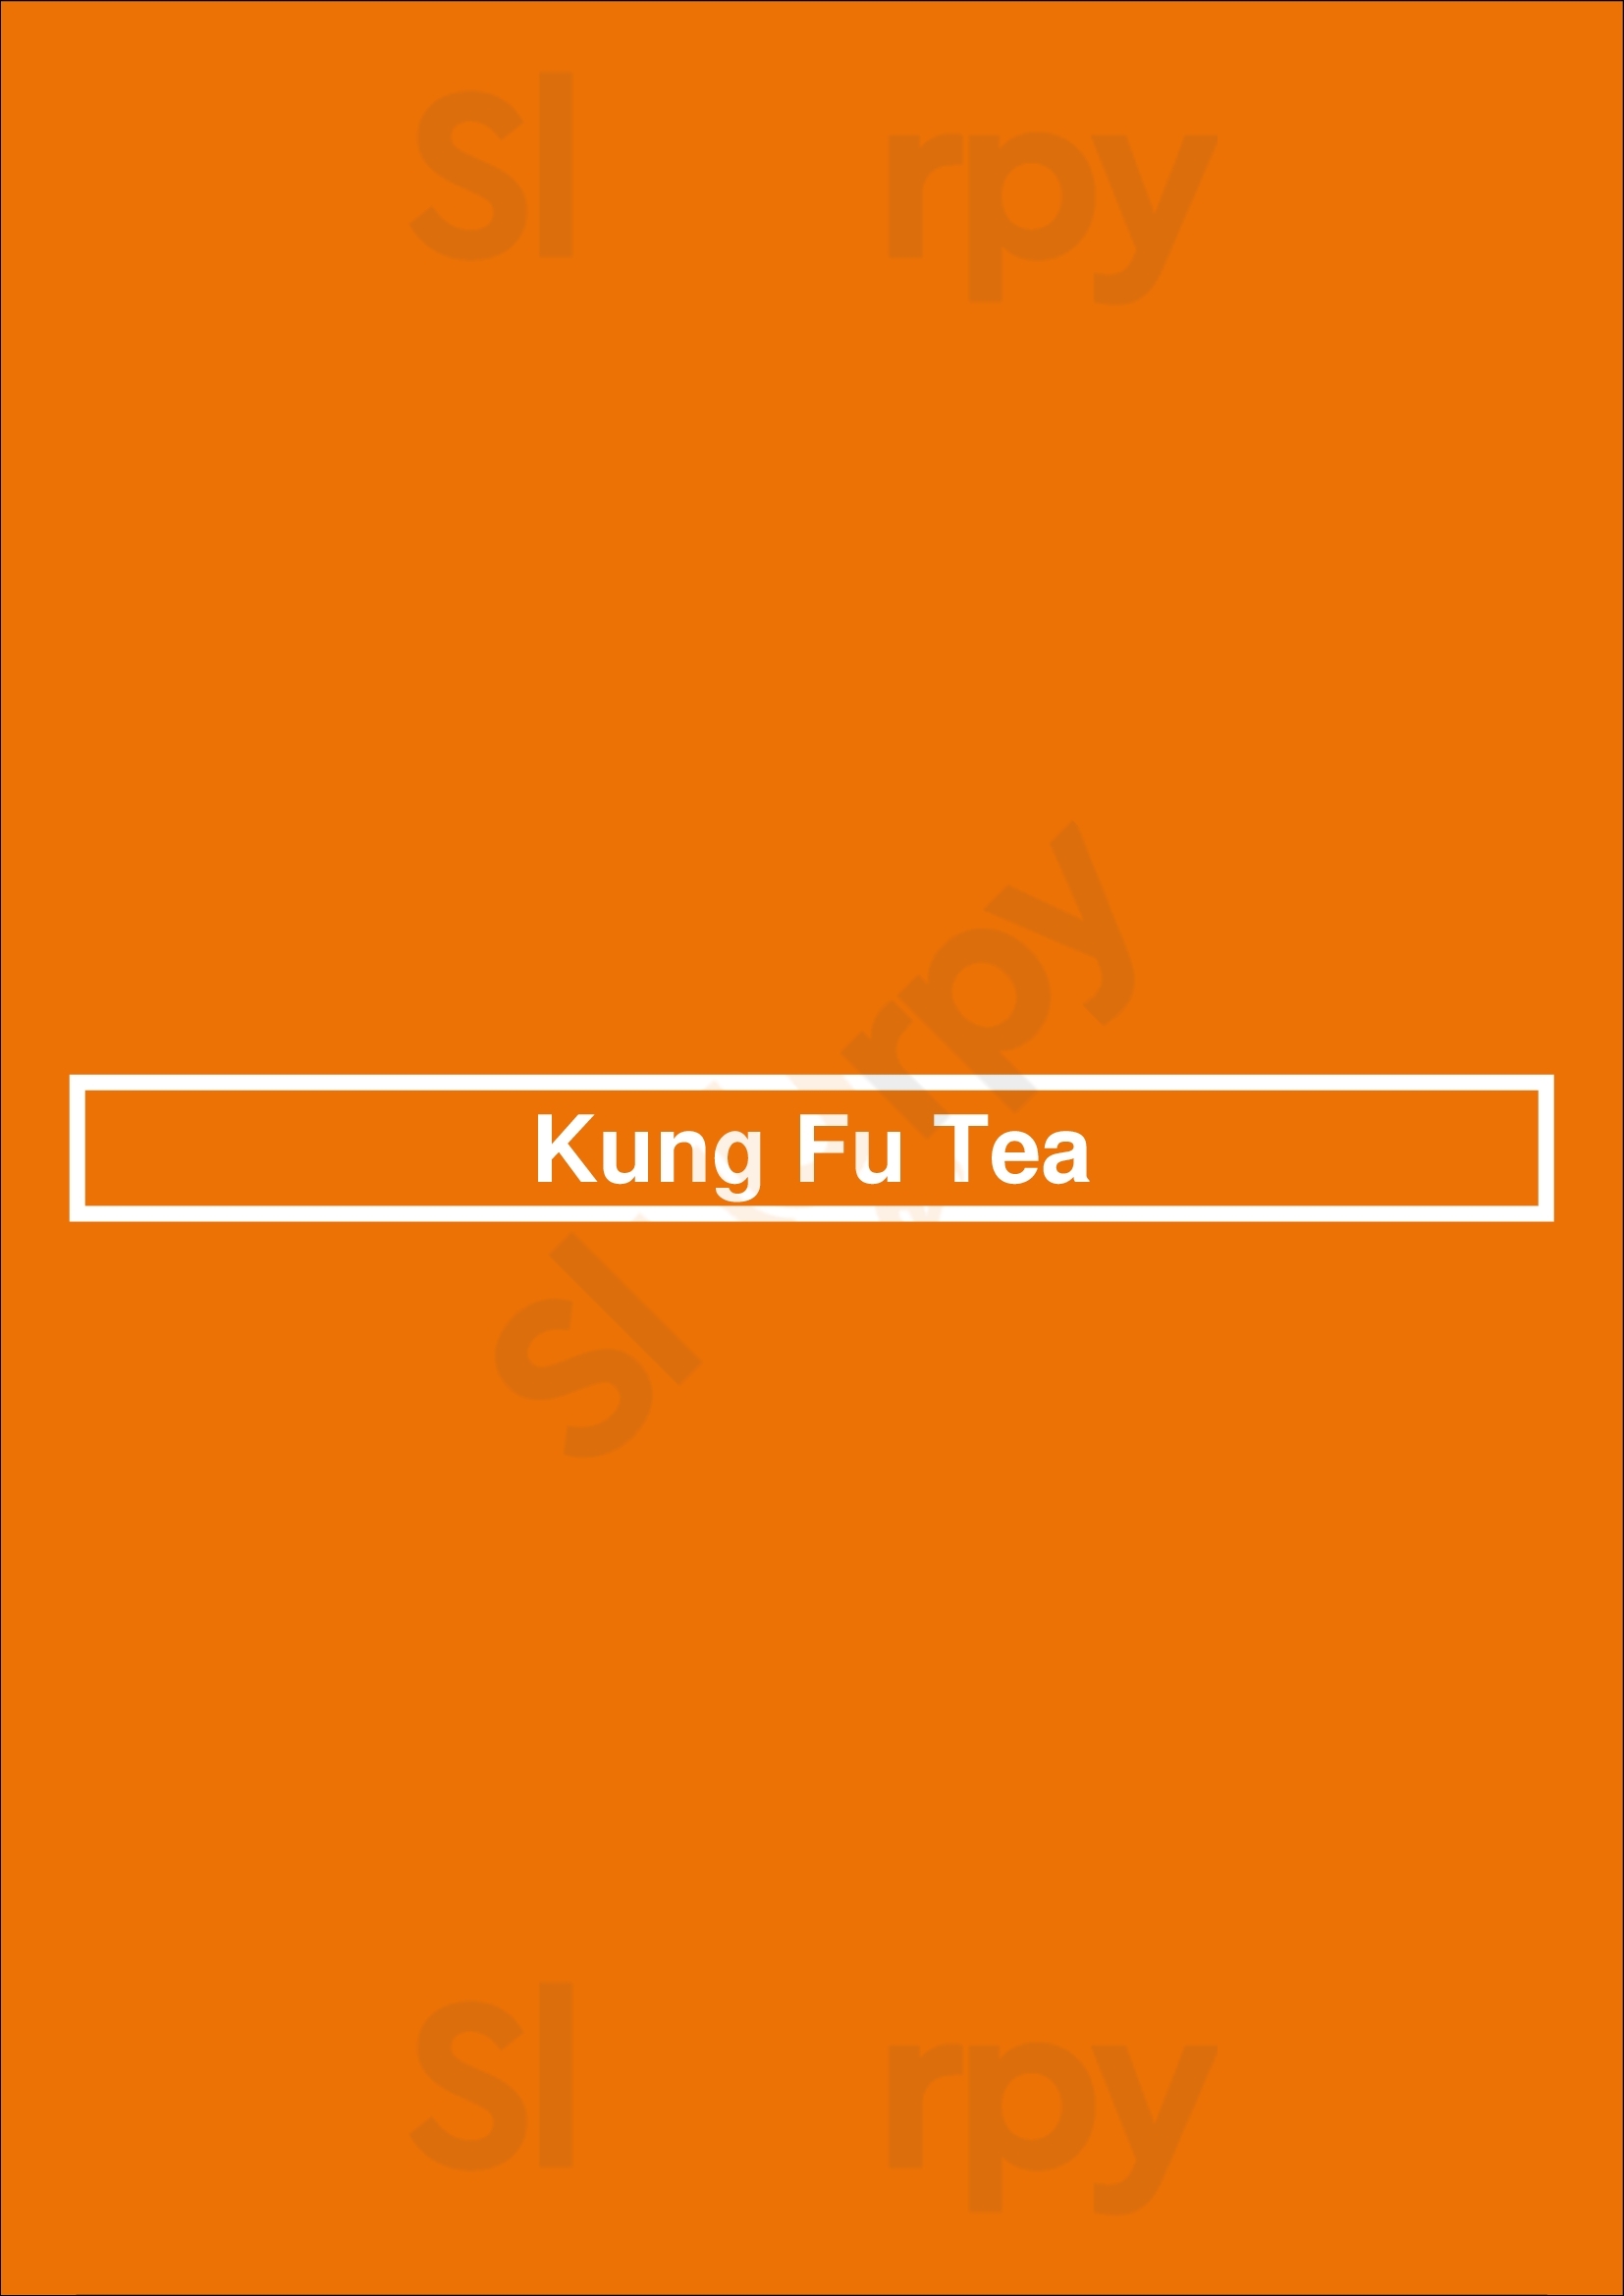 Kung Fu Tea Montclair Menu - 1